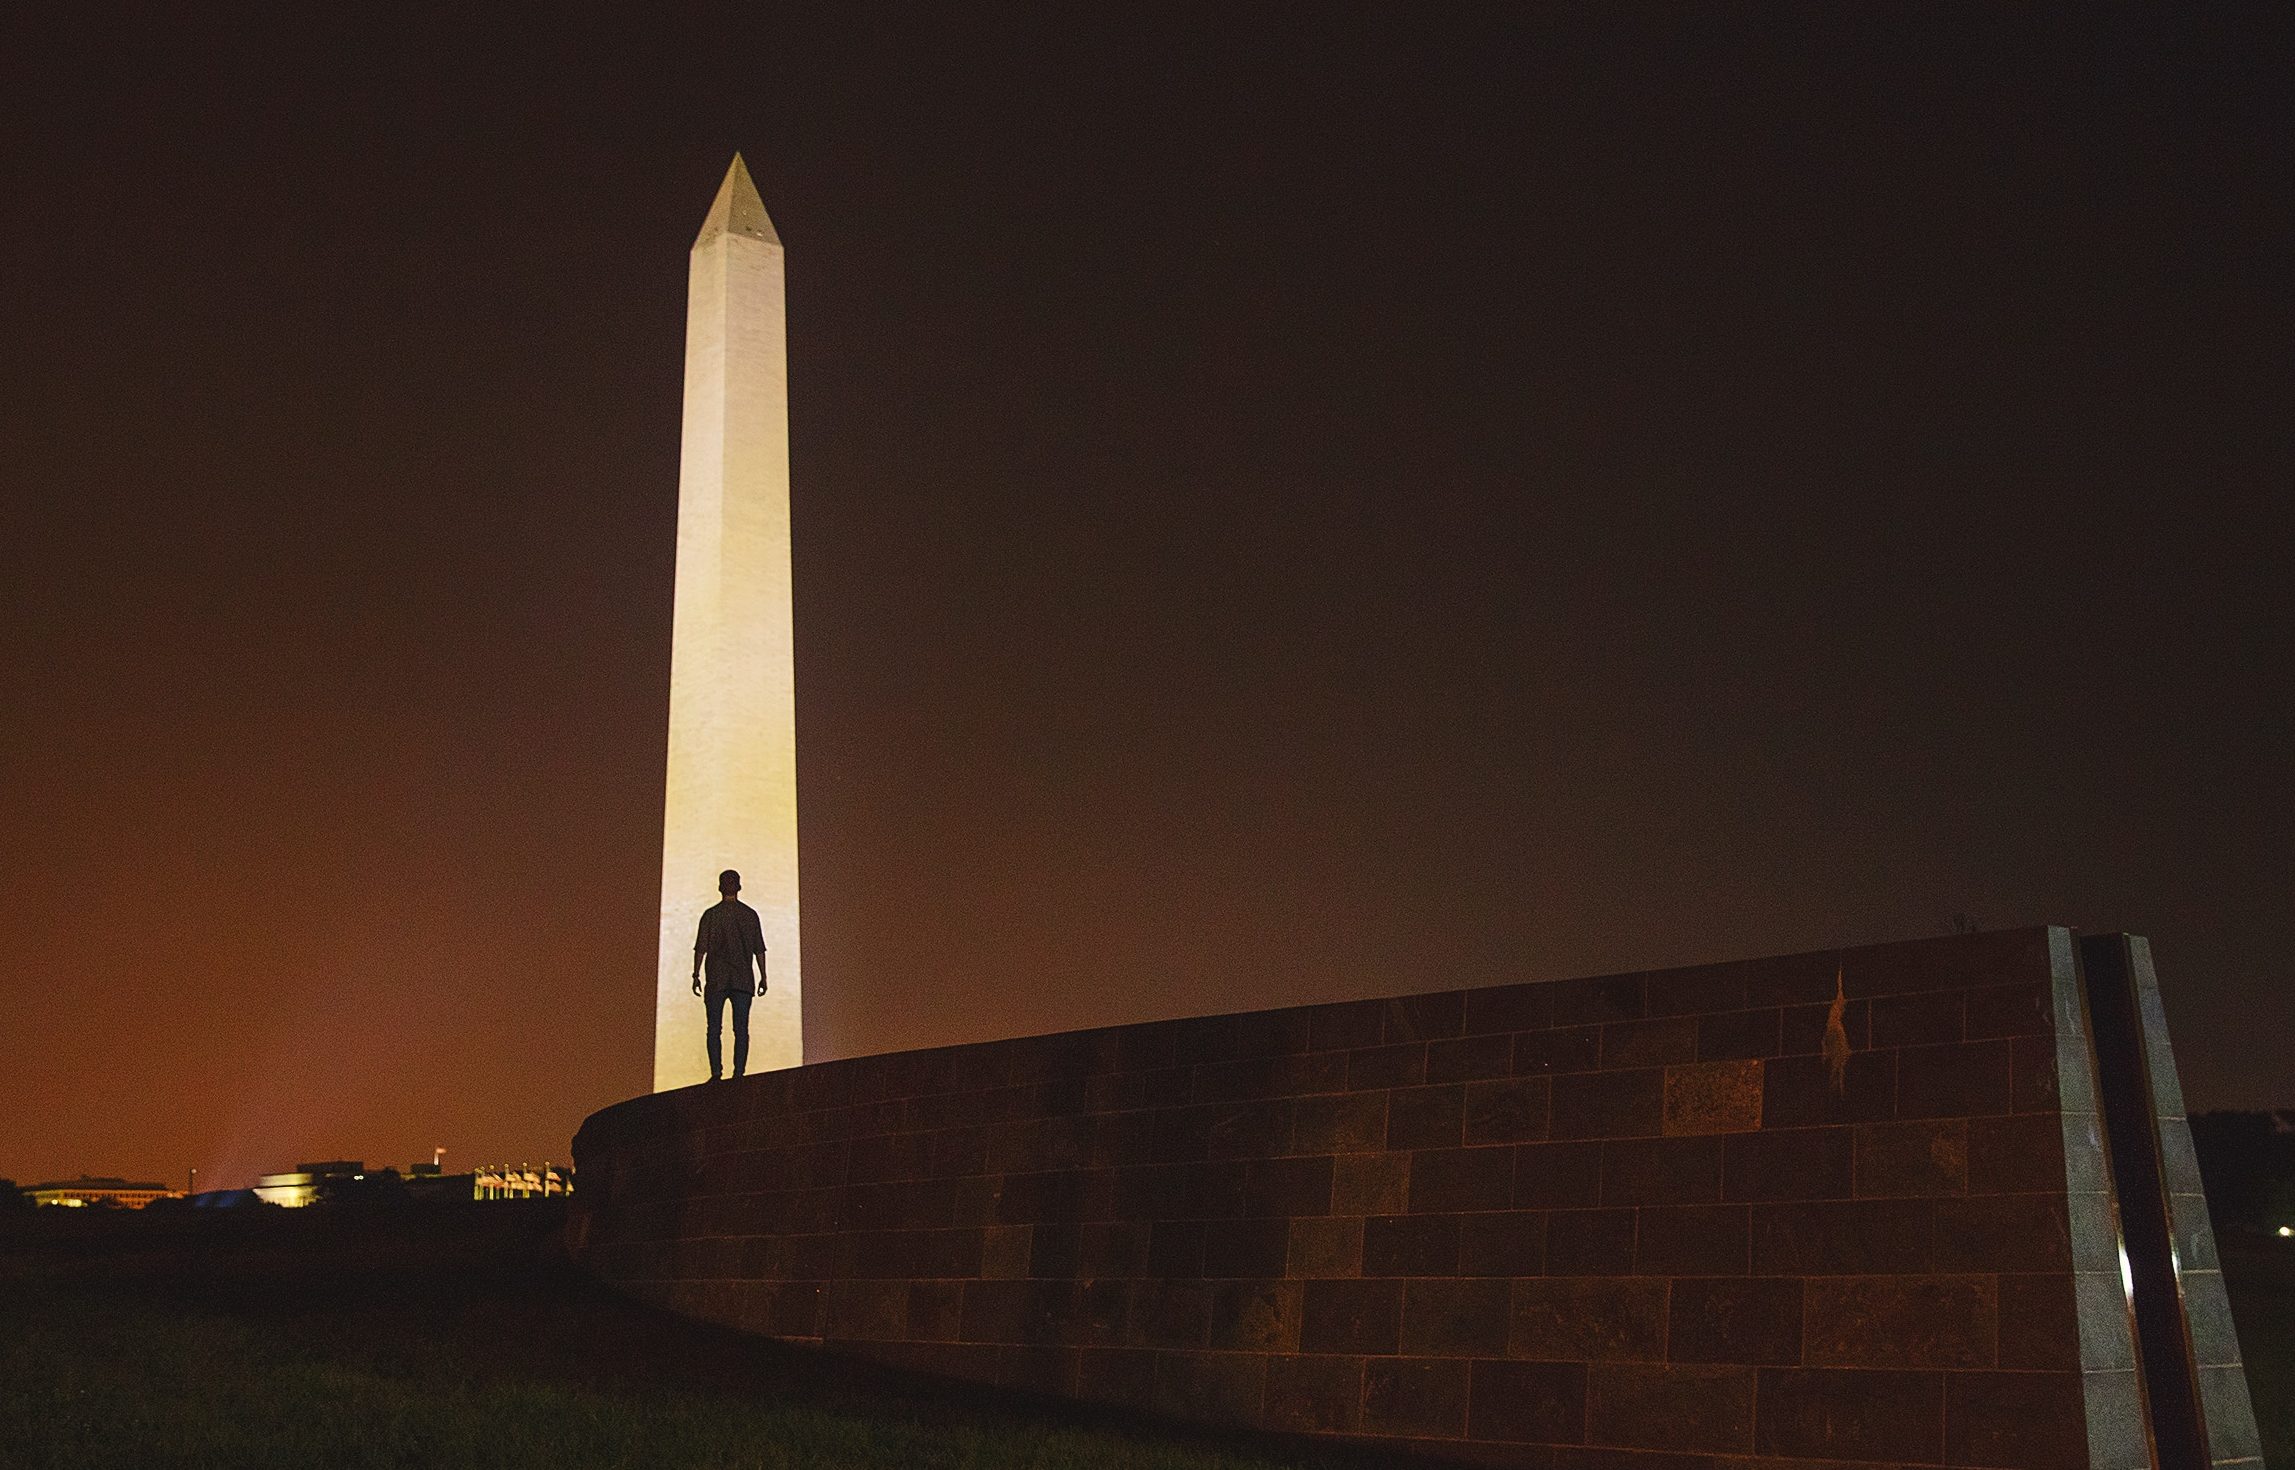 Het Washington Monument is een bekende monoliet.